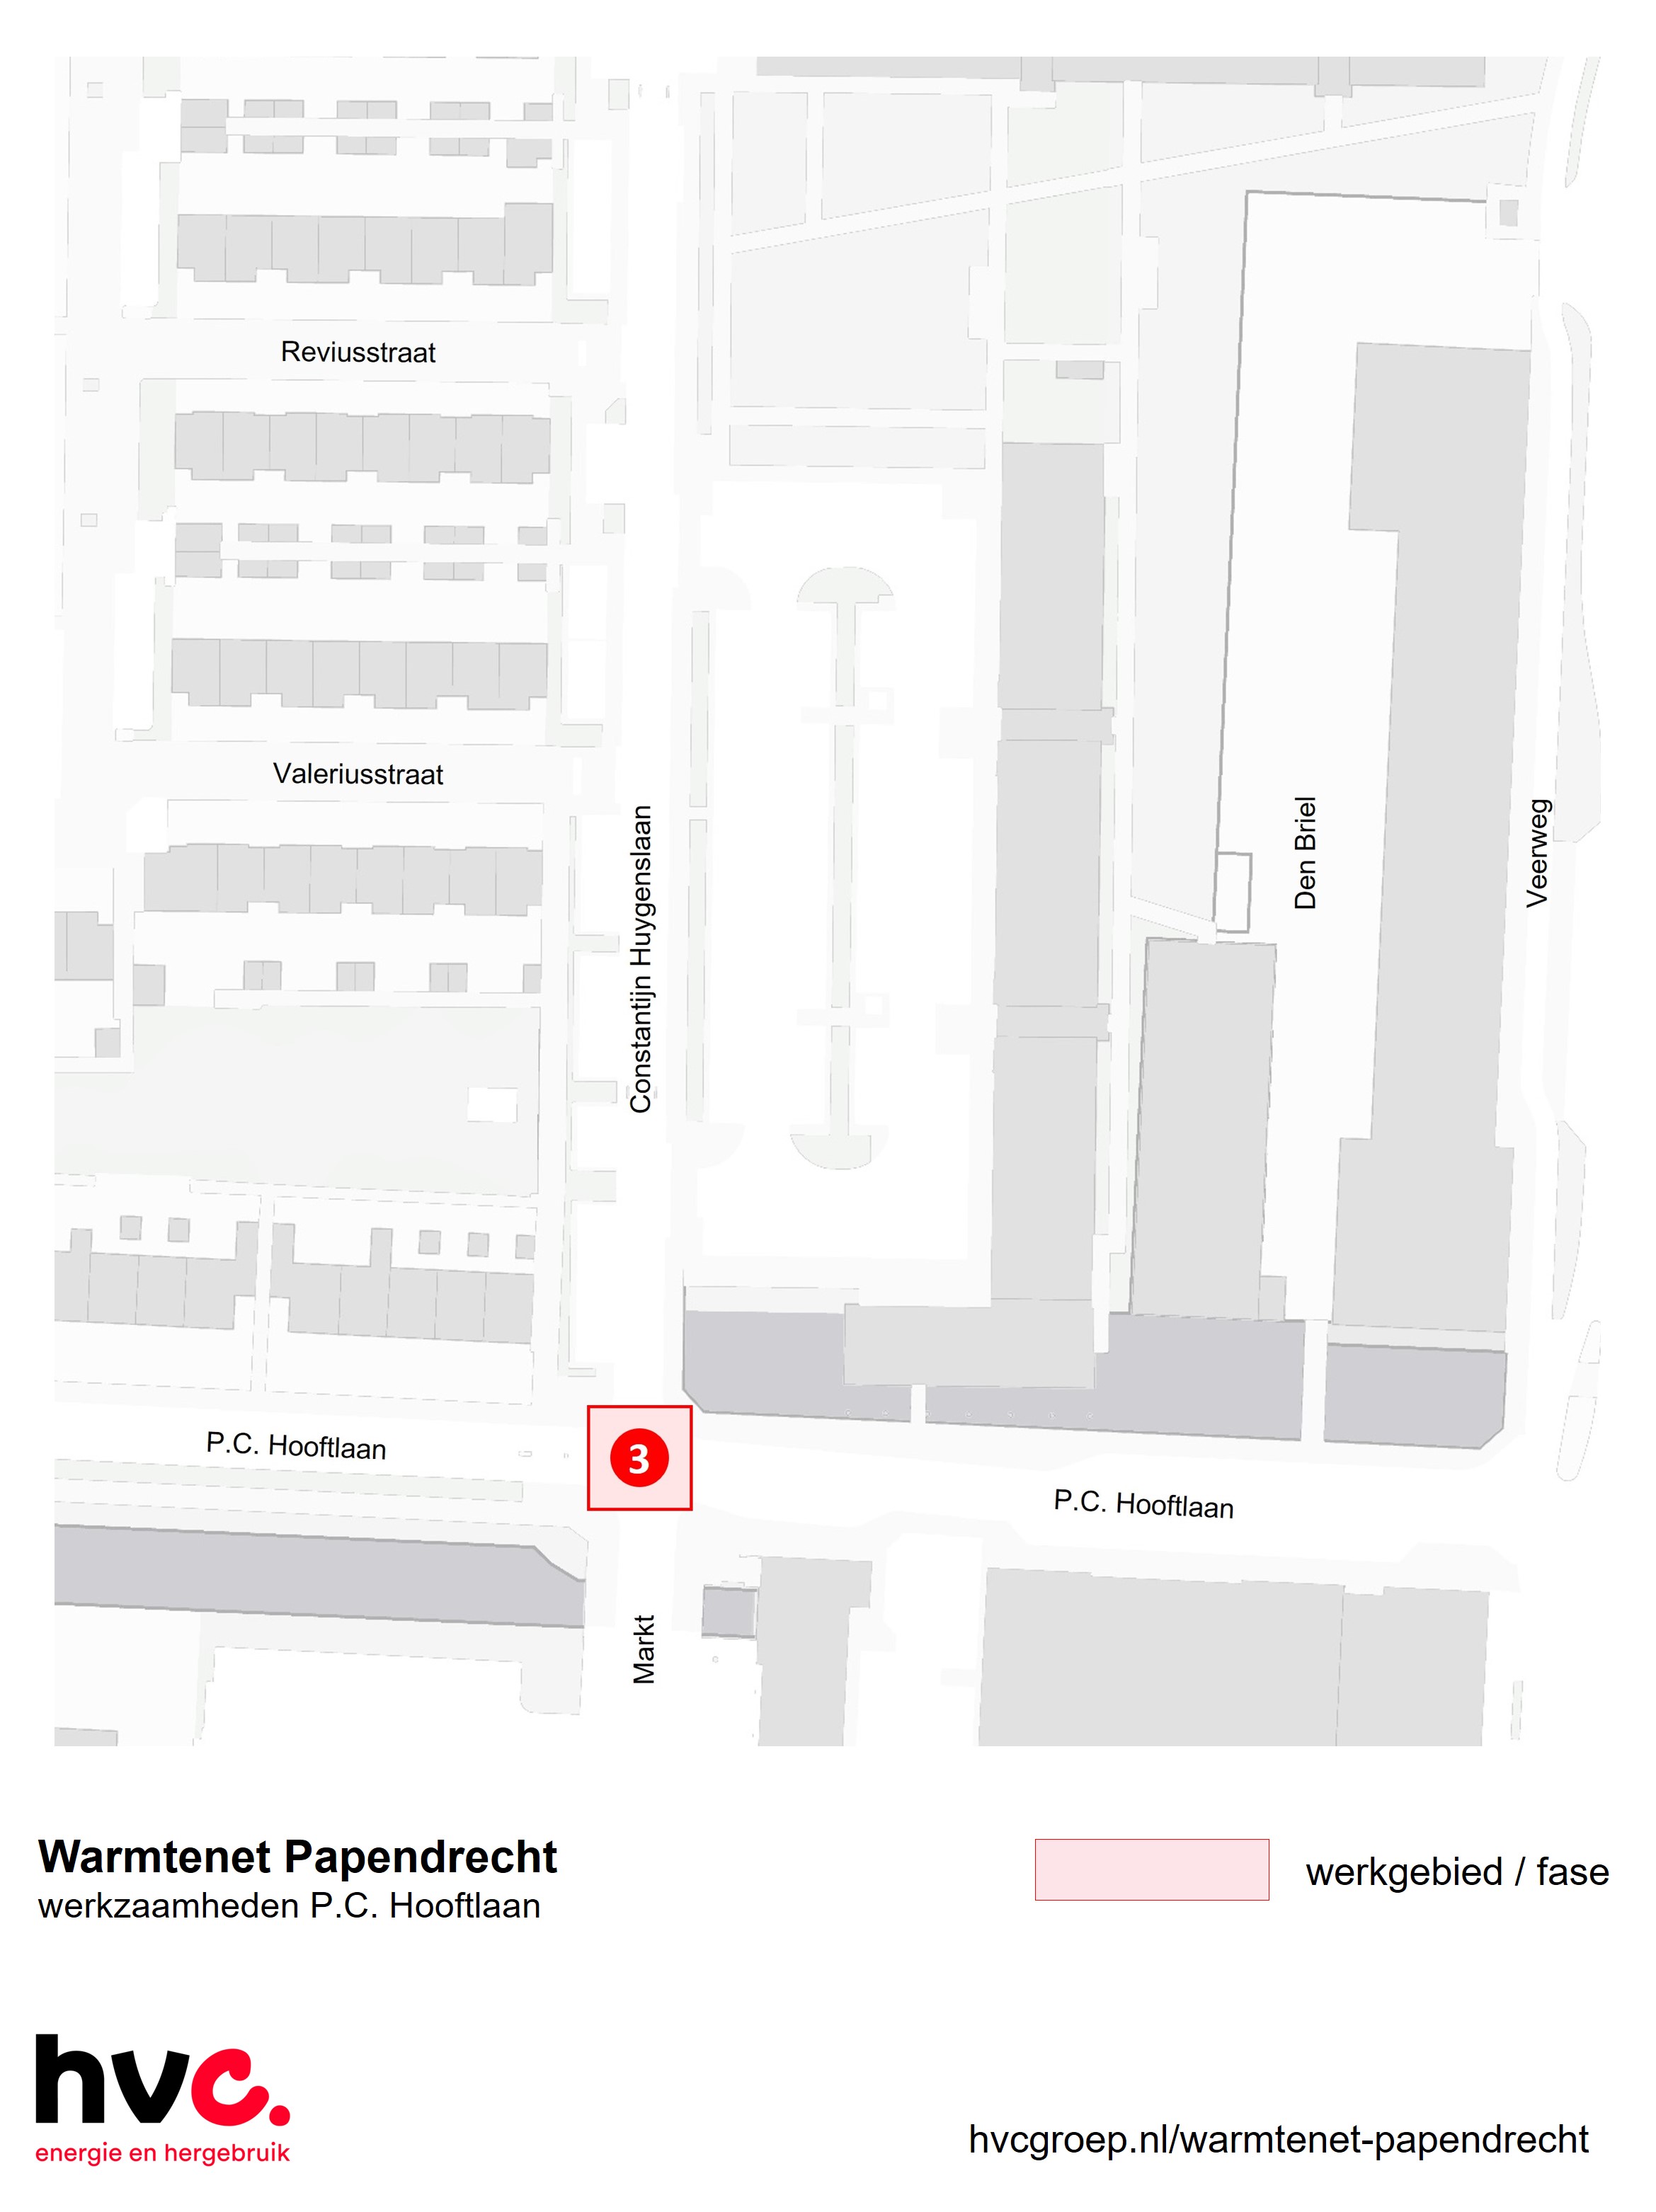 Plattegrond met daarop de locatie van de werkzaamheden in de P.C. Hooftlaan in Papendrecht.